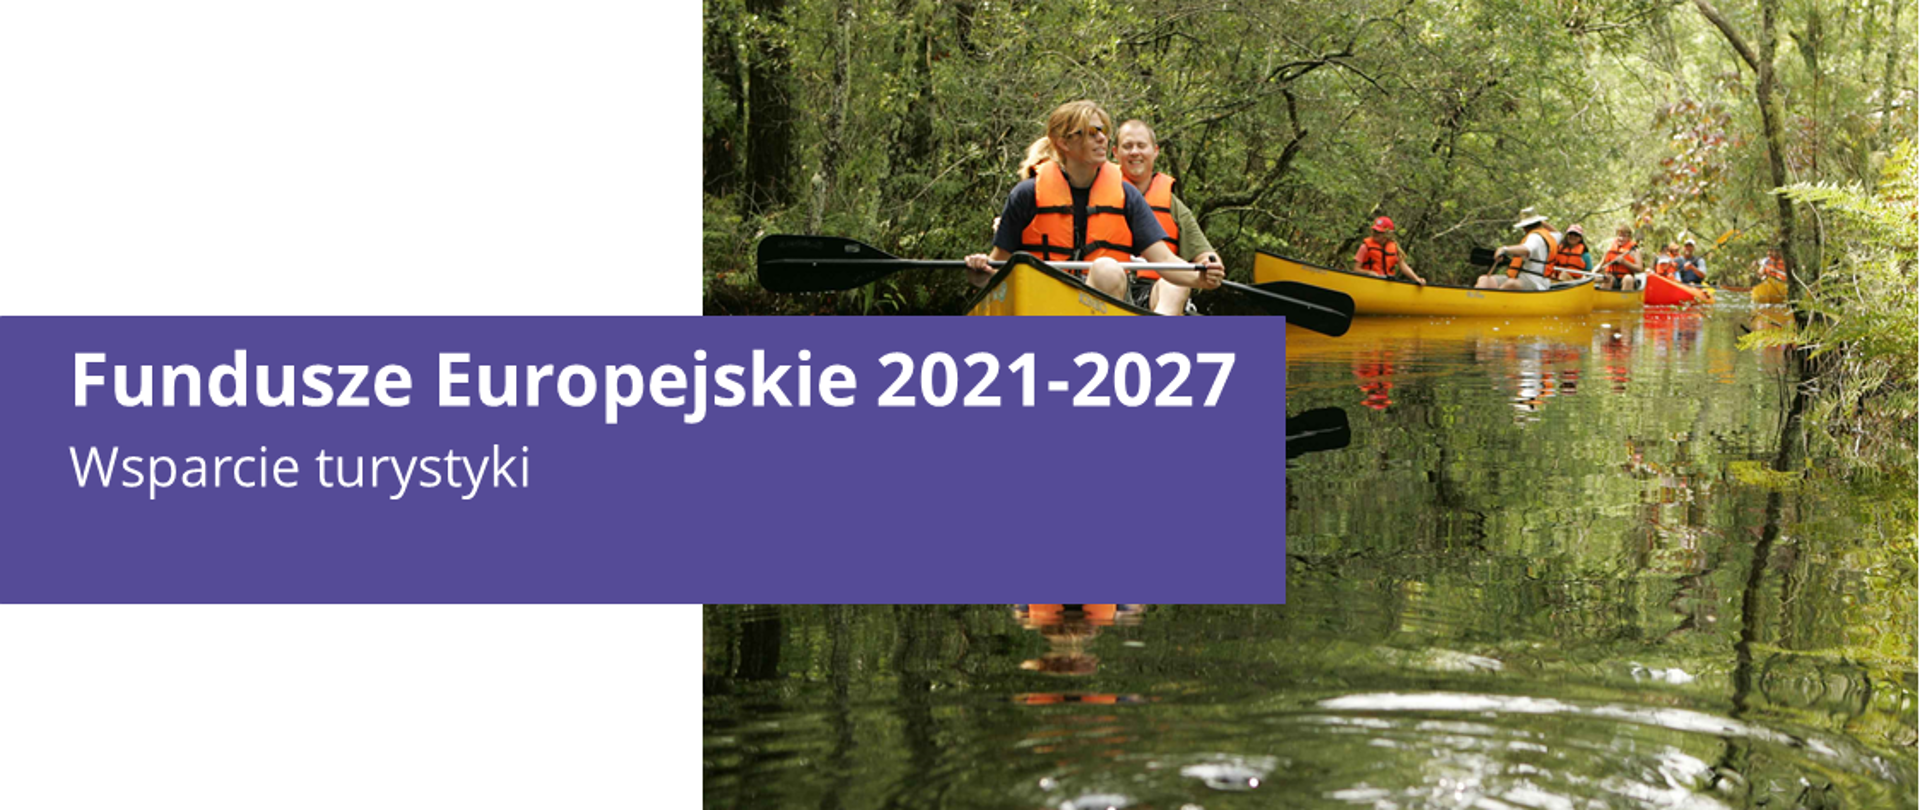 Na grafice zdjęcie płynących kajakarzy oraz napis "Fundusze Europejskie 2021-2017 Wsparcie turystki"